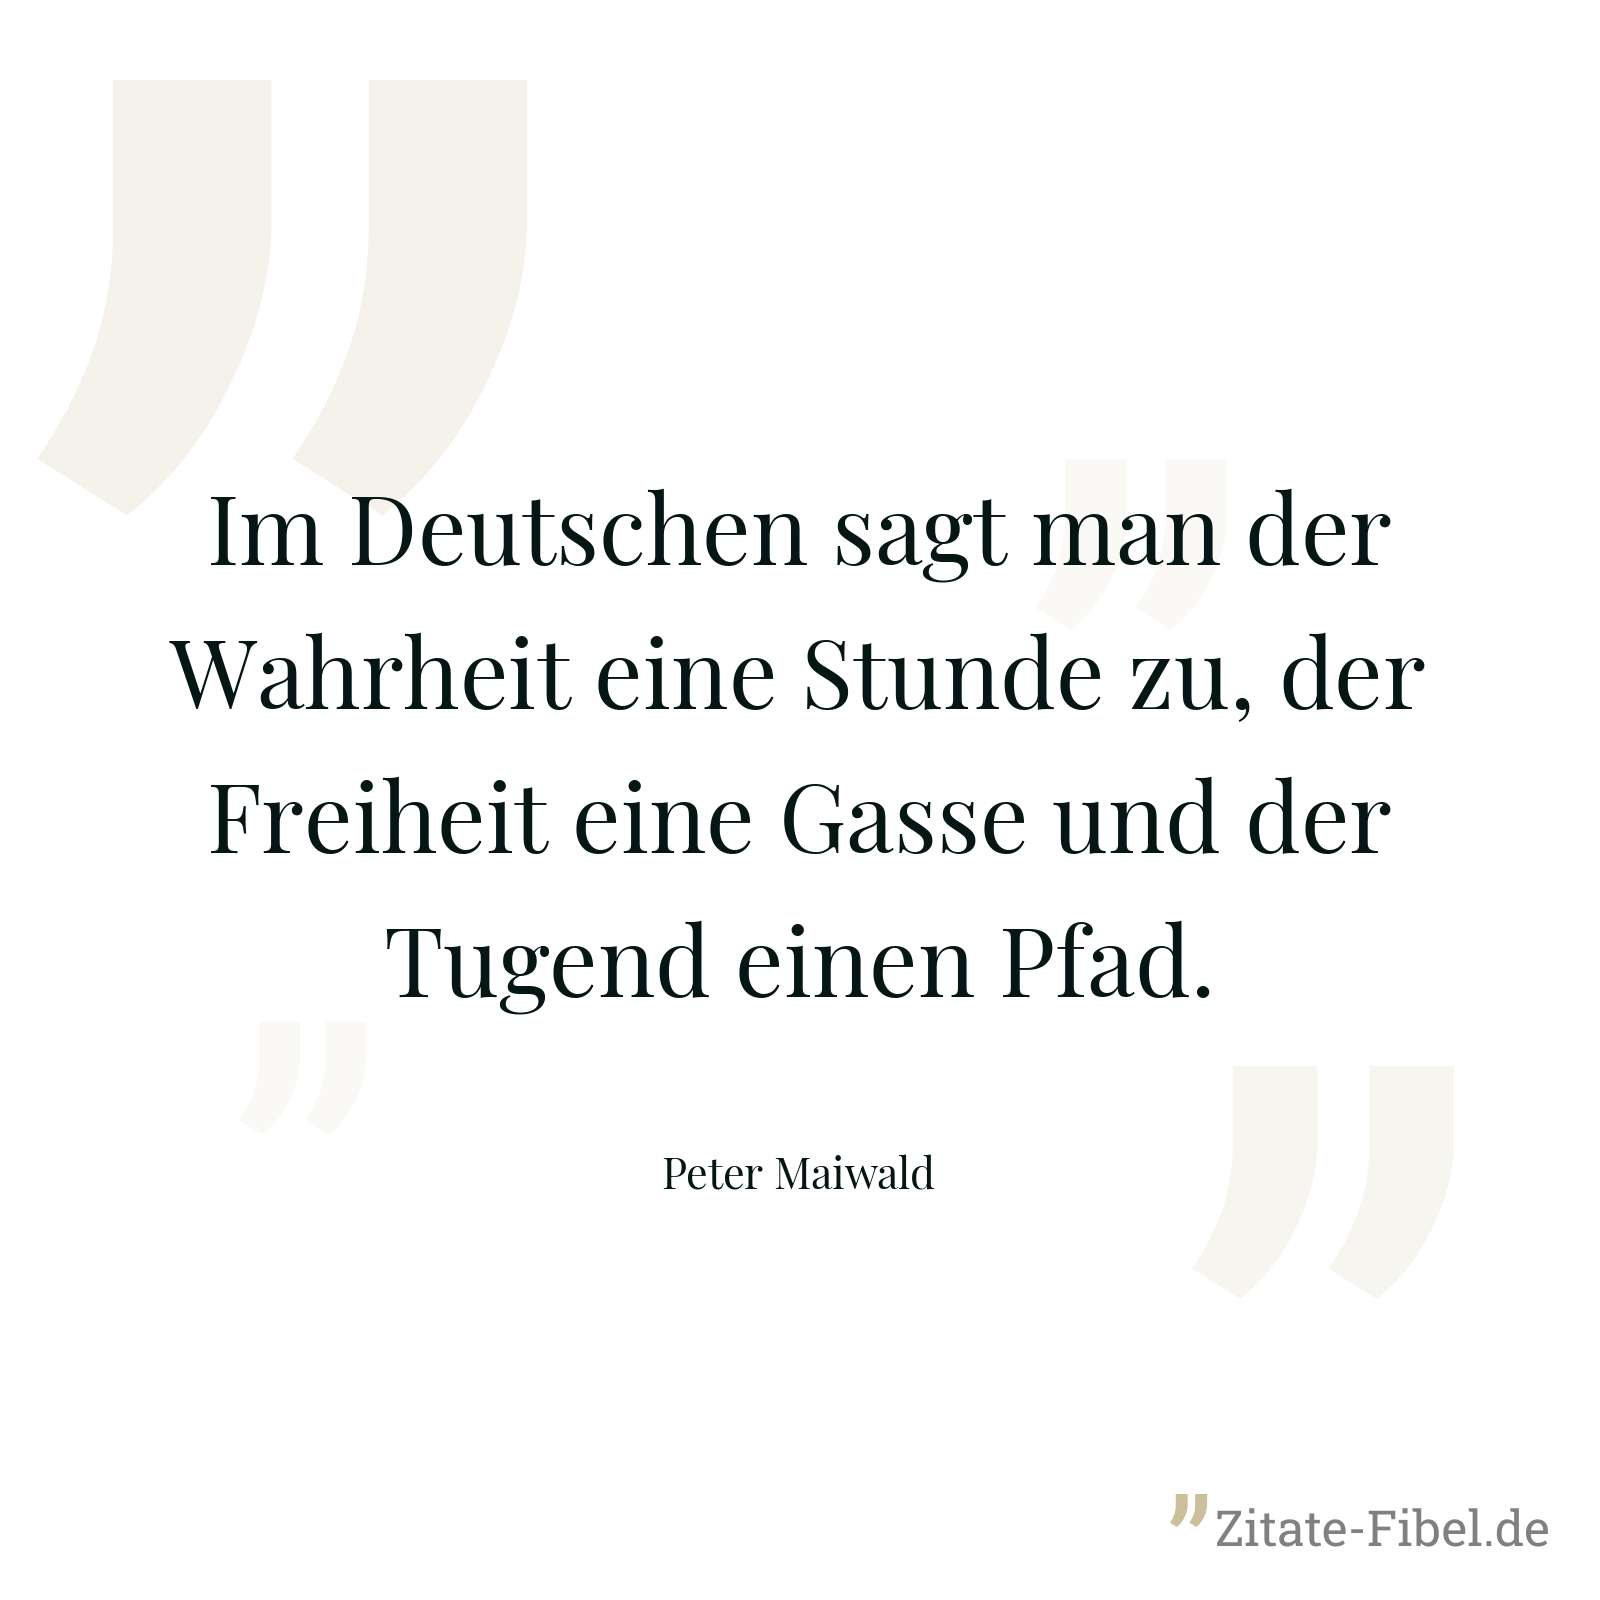 Im Deutschen sagt man der Wahrheit eine Stunde zu, der Freiheit eine Gasse und der Tugend einen Pfad. - Peter Maiwald